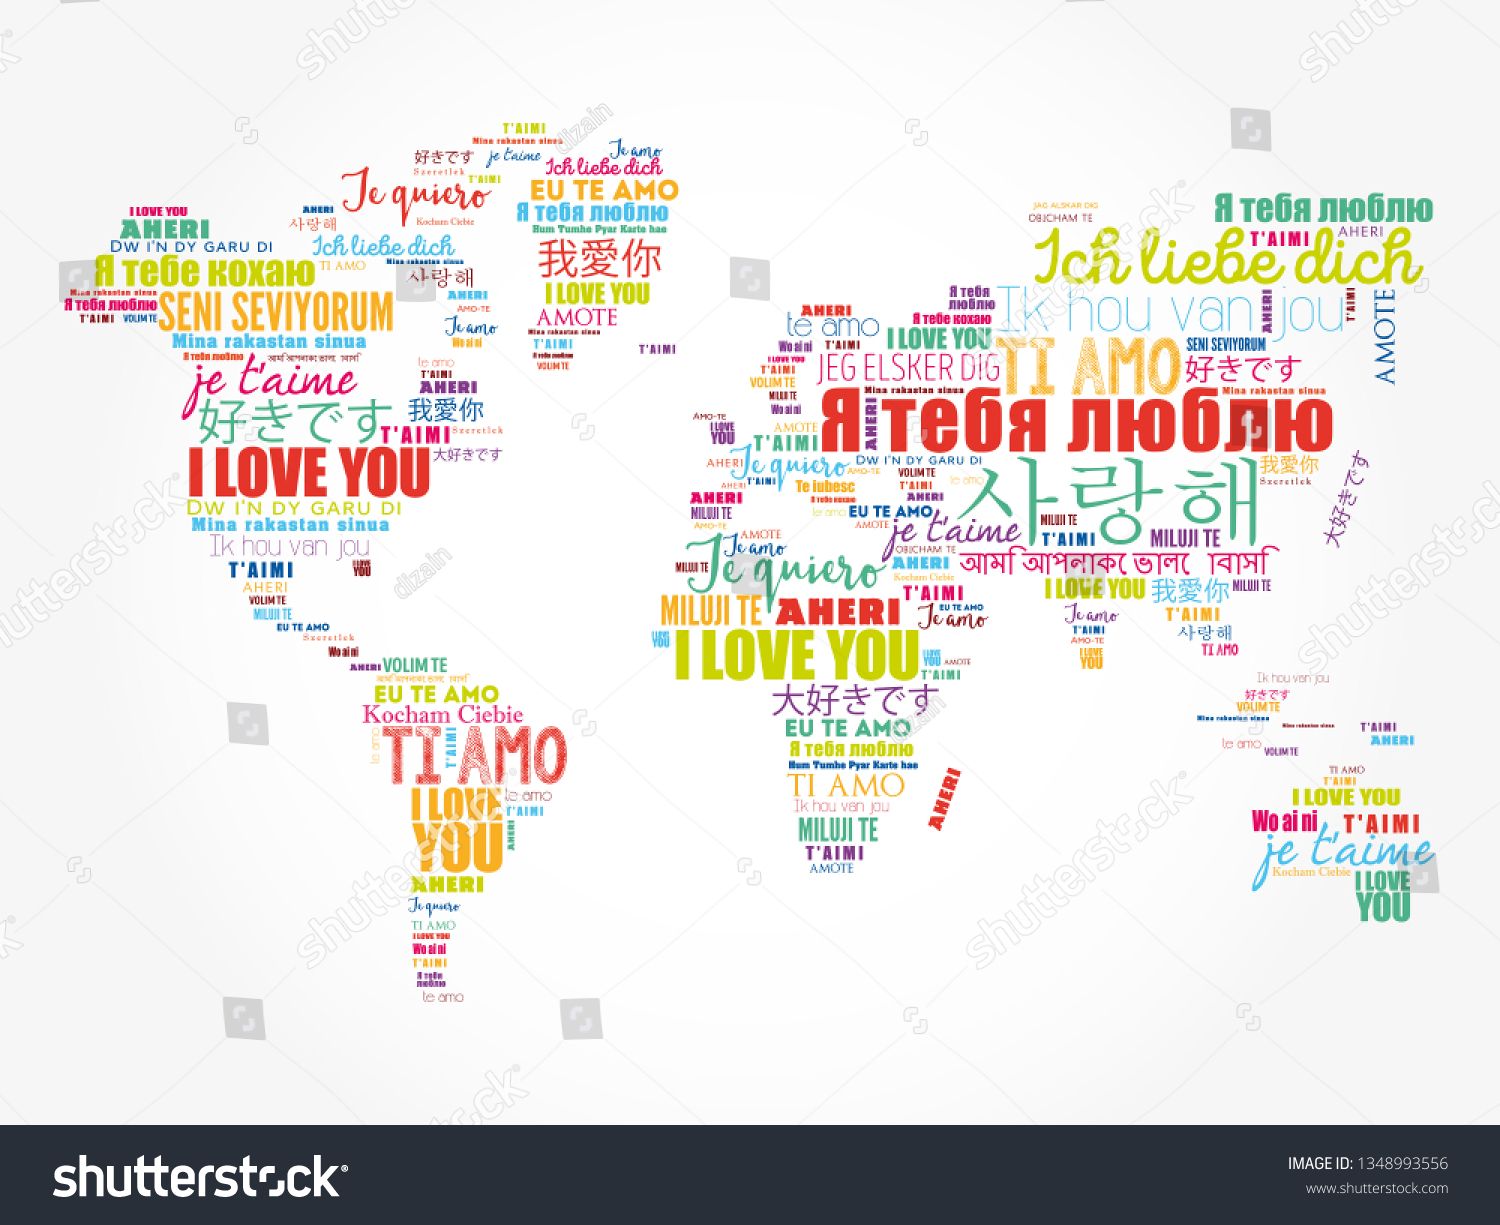 Душа на разных языках. Я тебя люблю на всех языках. Слово люблю на разных языках.